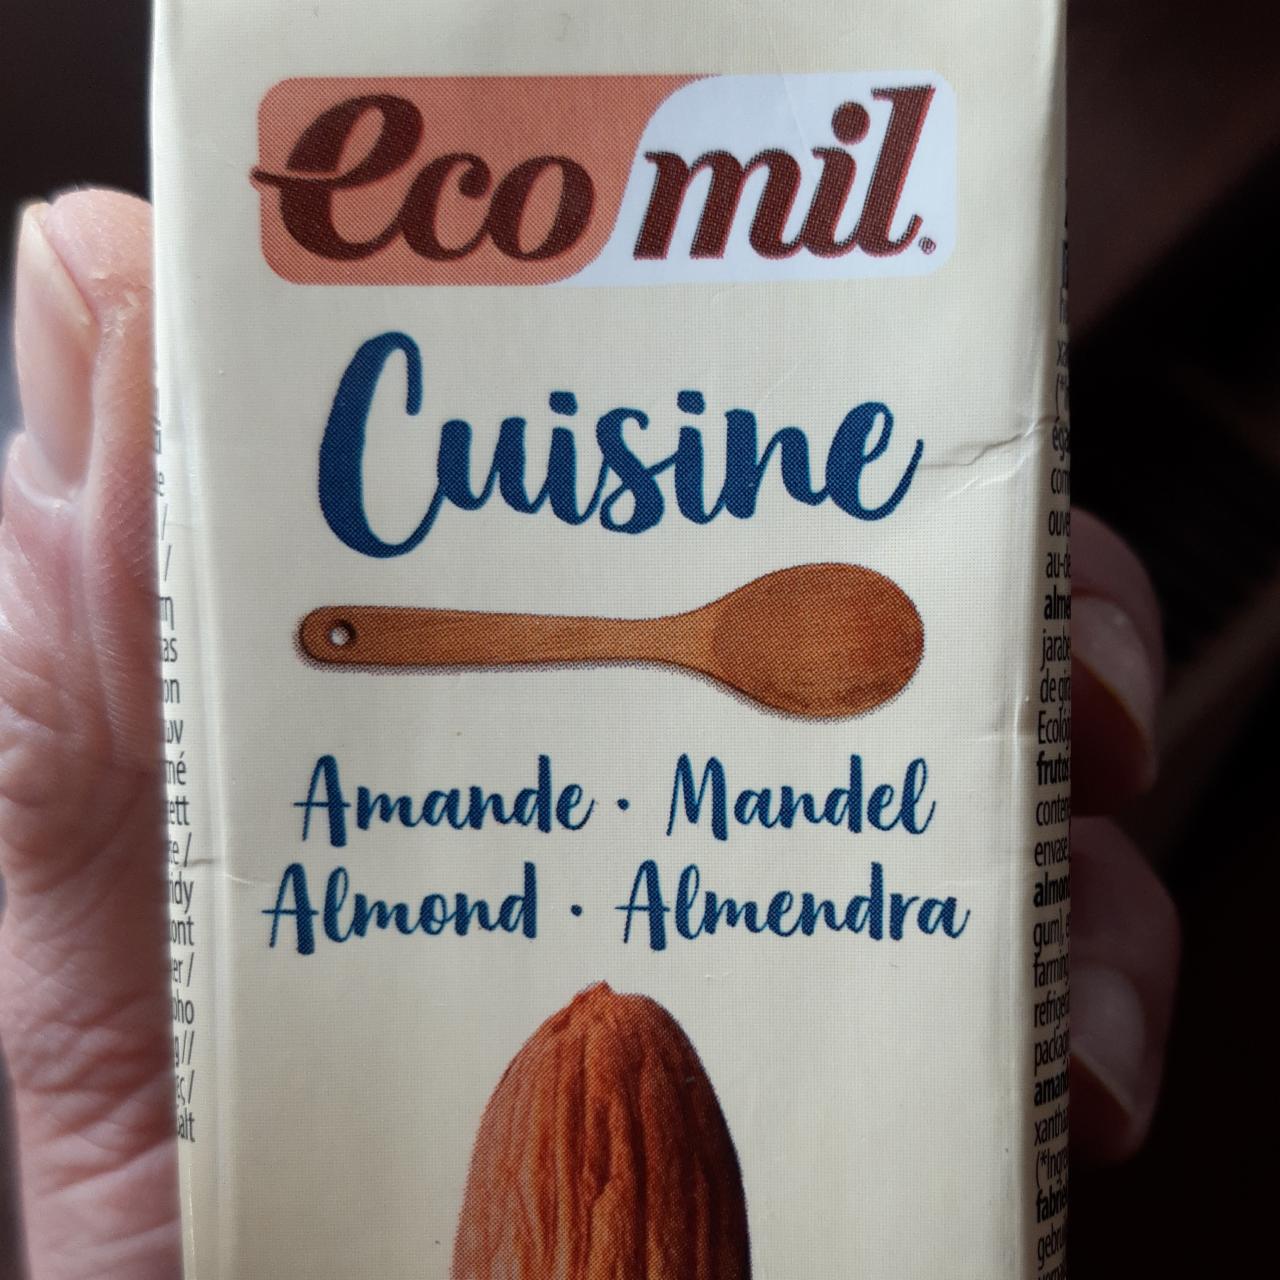 Fotografie - Cuisine Almond EcoMil